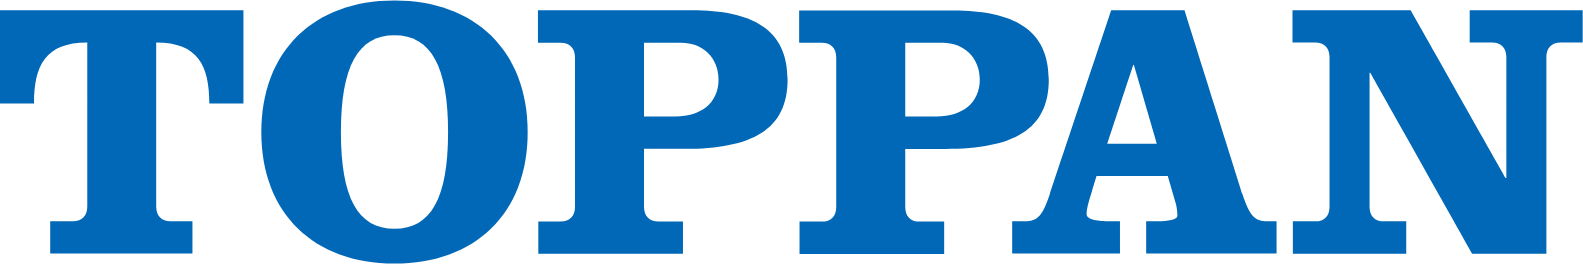 Toppan logo large (transparent PNG)